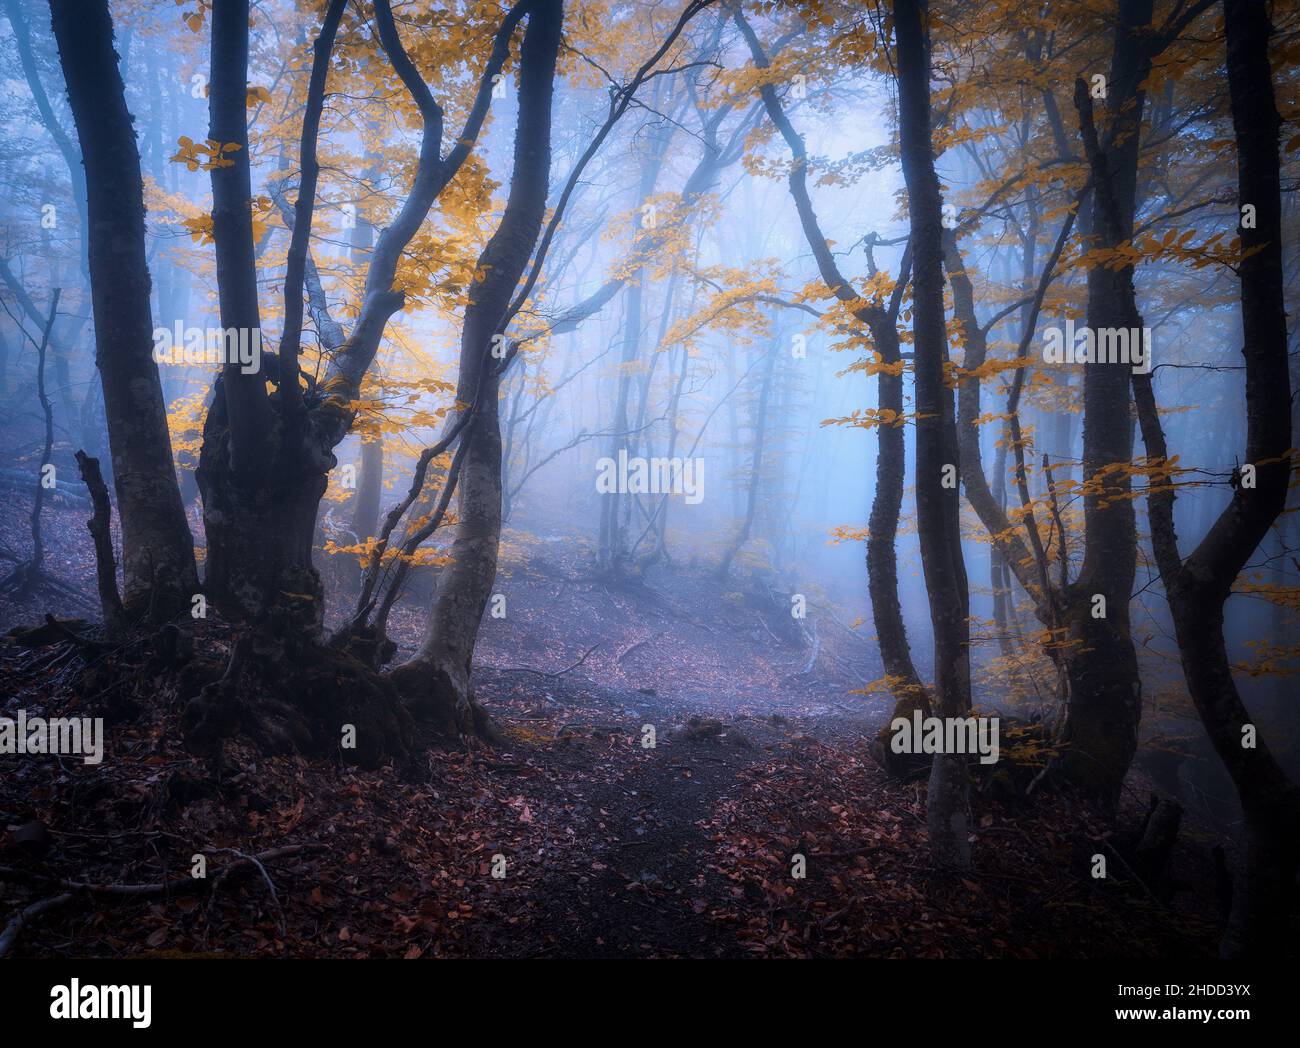 Foresta mistica in nebbia blu in autunno. Legno scuro Foto Stock